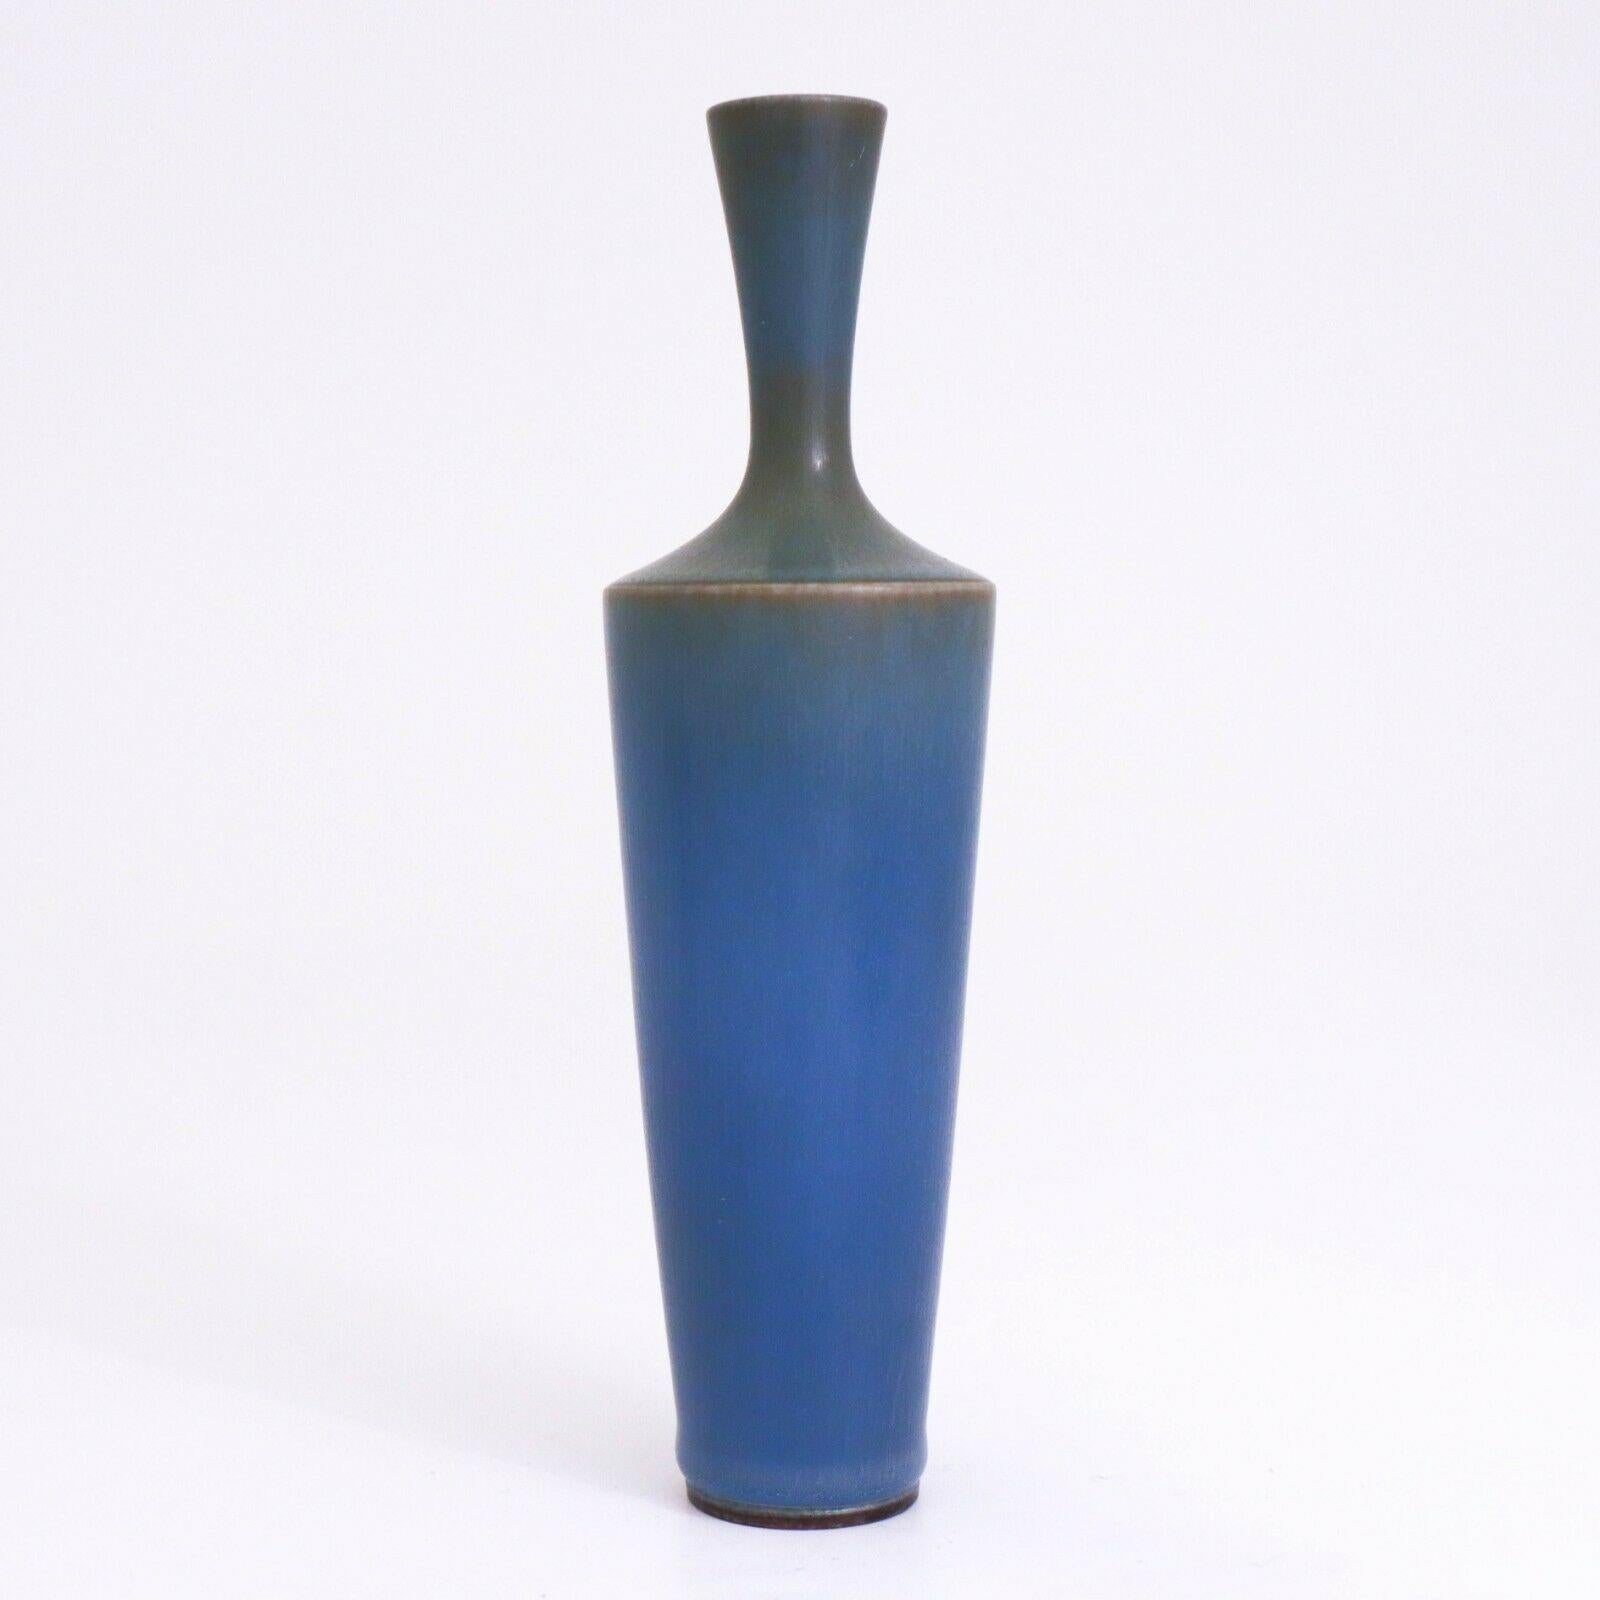 Eine schöne blaue Vase, entworfen von Berndt Friberg bei Gustavsberg in Stockholm. Die Vase ist 16,5 cm hoch und hat eine schöne Harfur-Glasur. Es ist wie auf dem Bild markiert und wurde 1958 hergestellt. Der Spiegel ist in ausgezeichnetem Zustand.